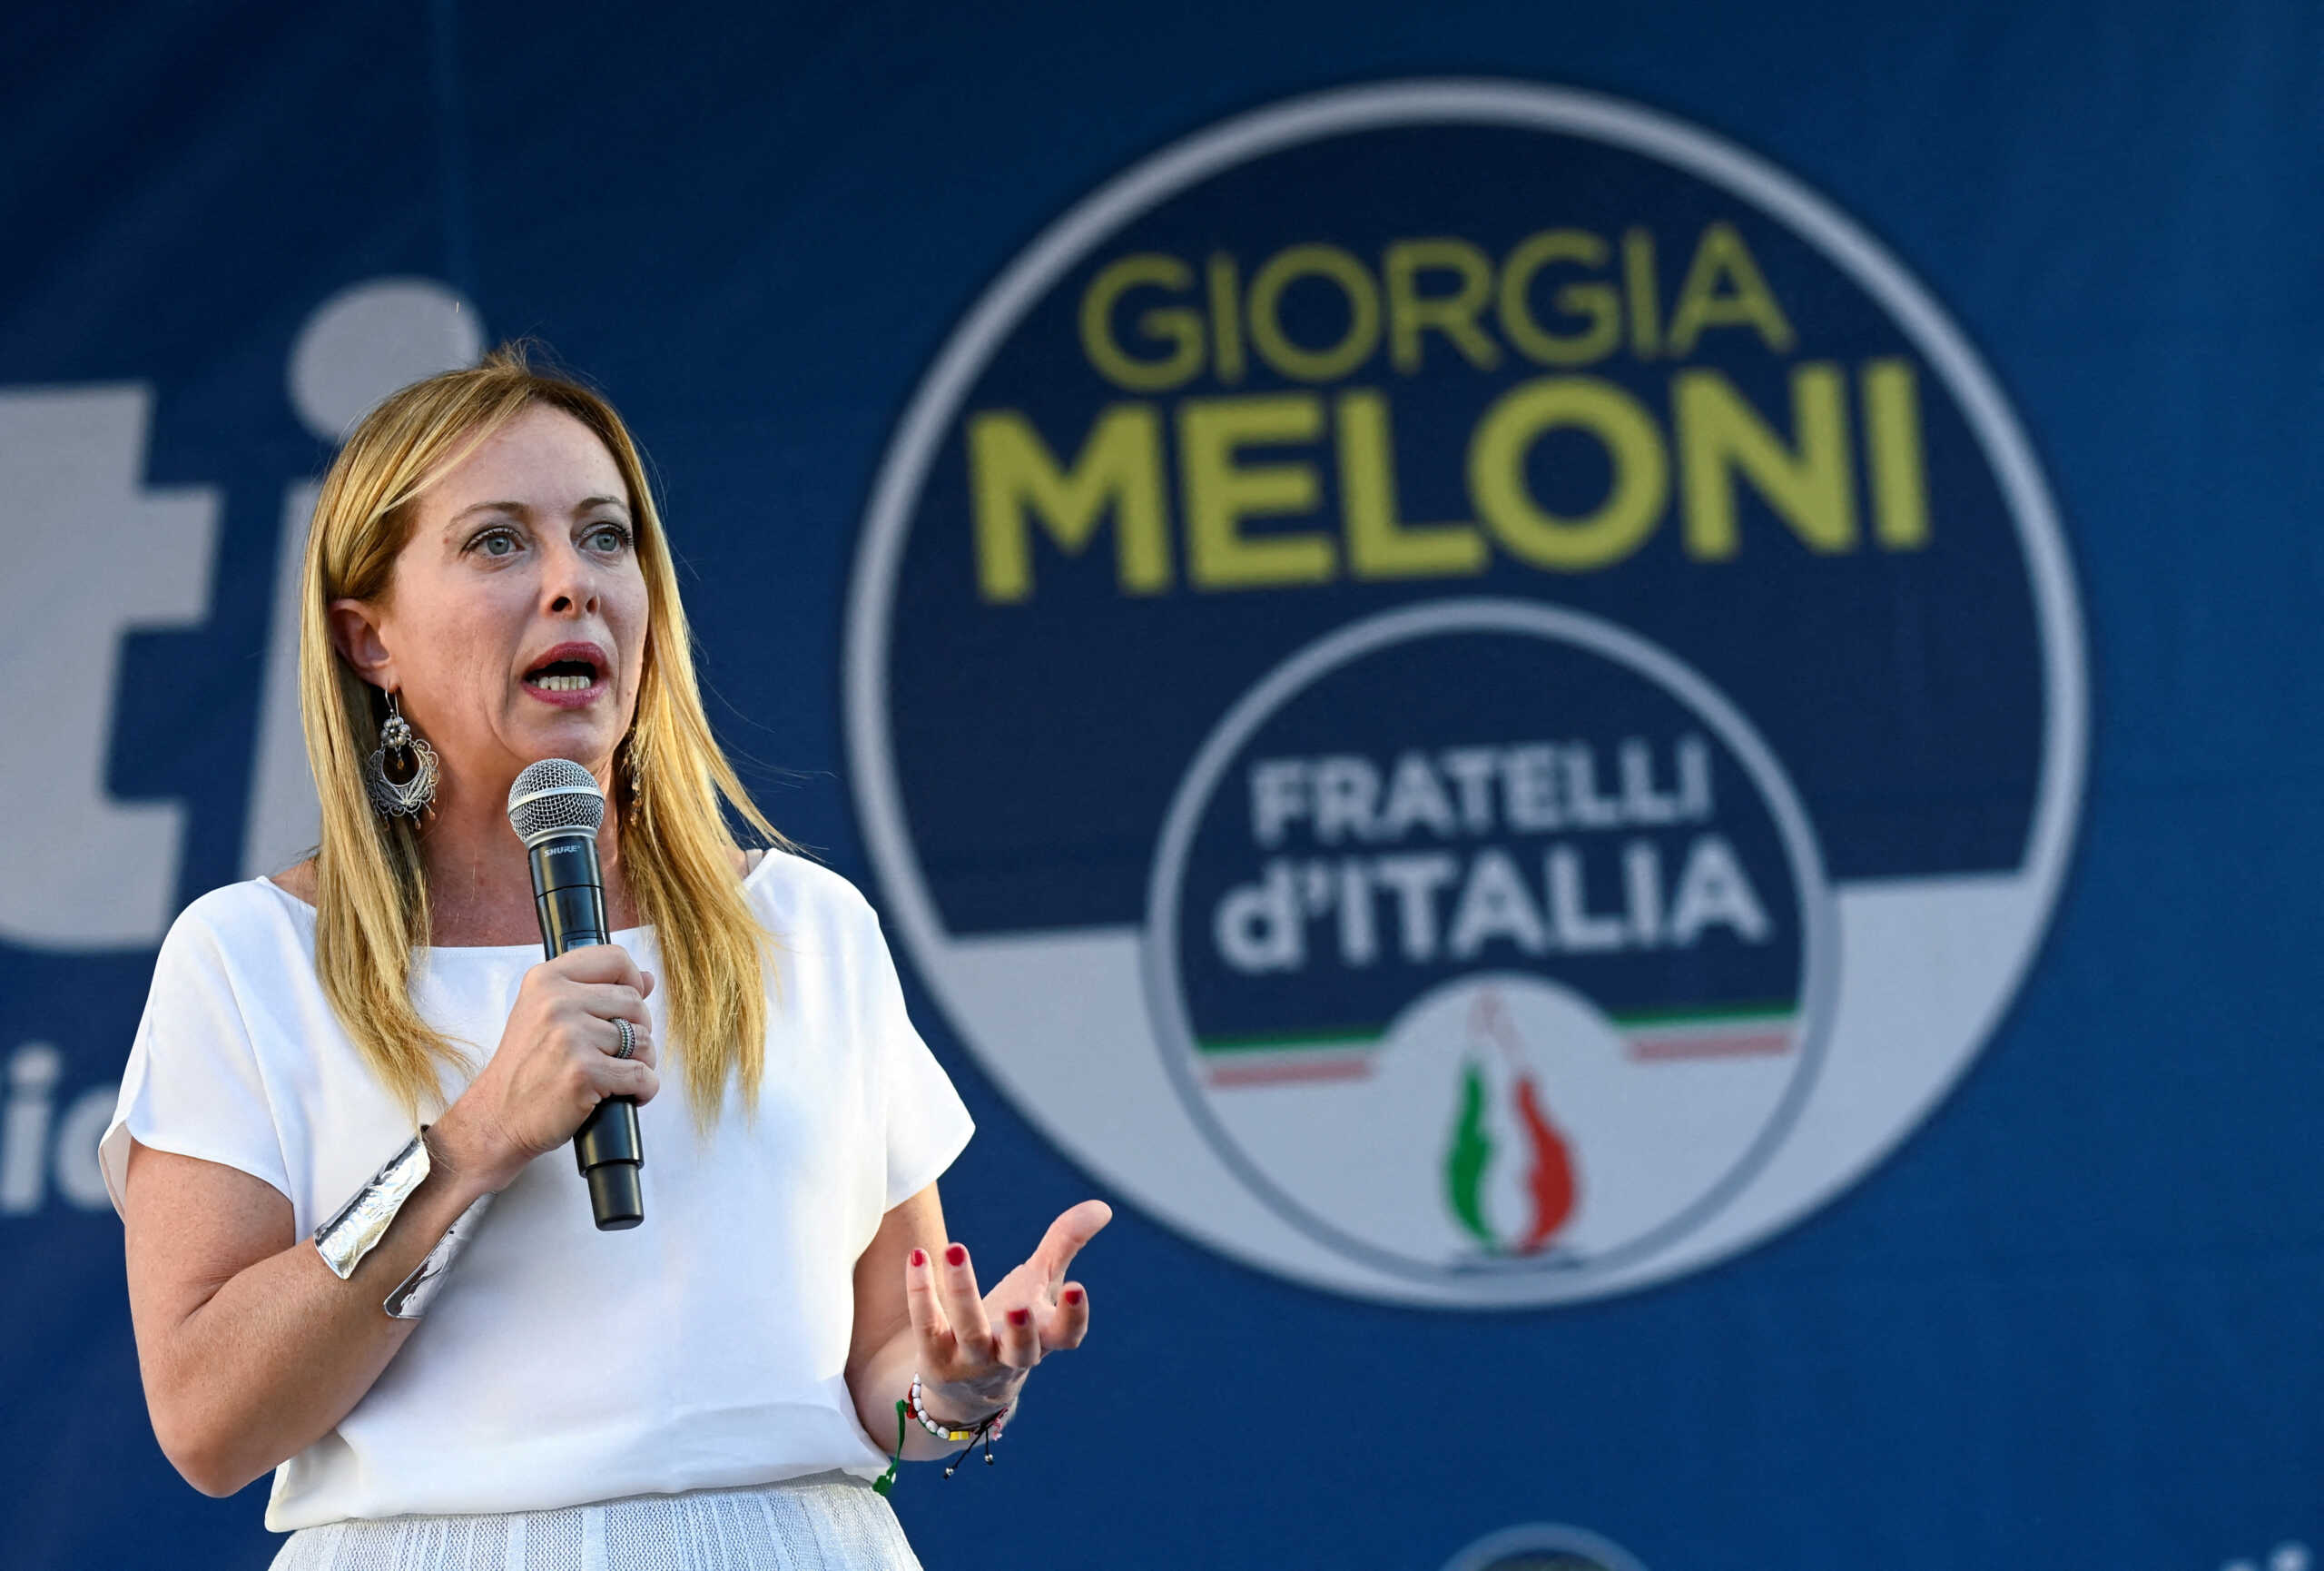 Ρομάνο Πρόντι για εκλογές στην Ιταλία: Αν κερδίσει η Μελόνι μπορεί να απομονωθούμε διεθνώς